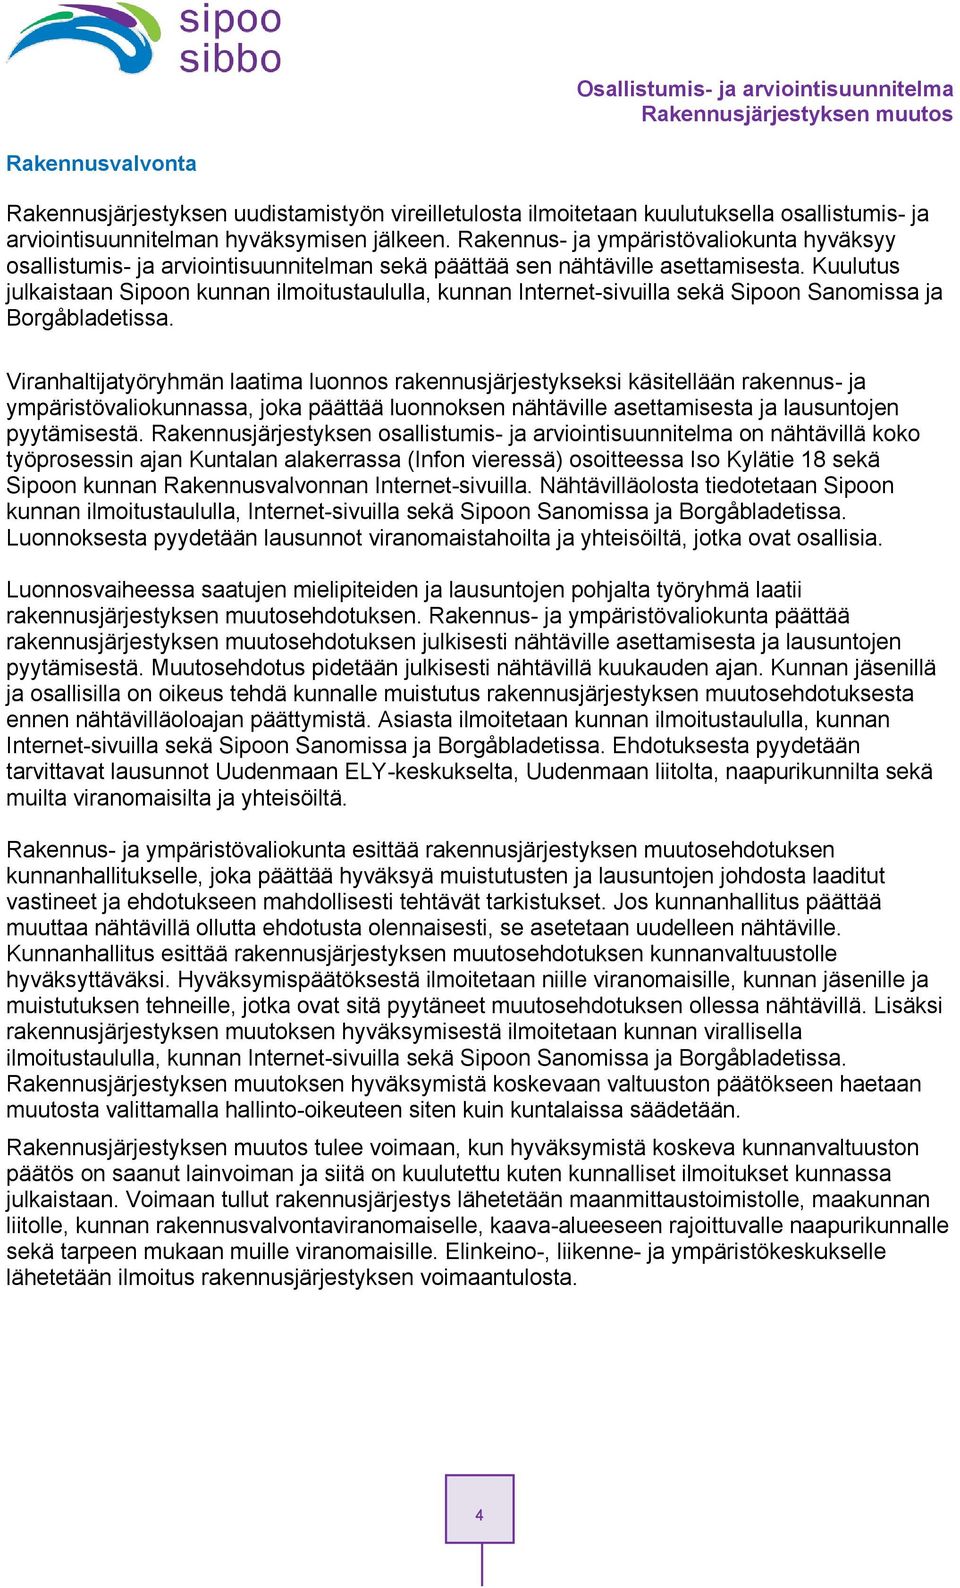 Kuulutus julkaistaan Sipn kunnan ilmitustaululla, kunnan Internet-sivuilla sekä Sipn Sanmissa ja Brgåbladetissa.